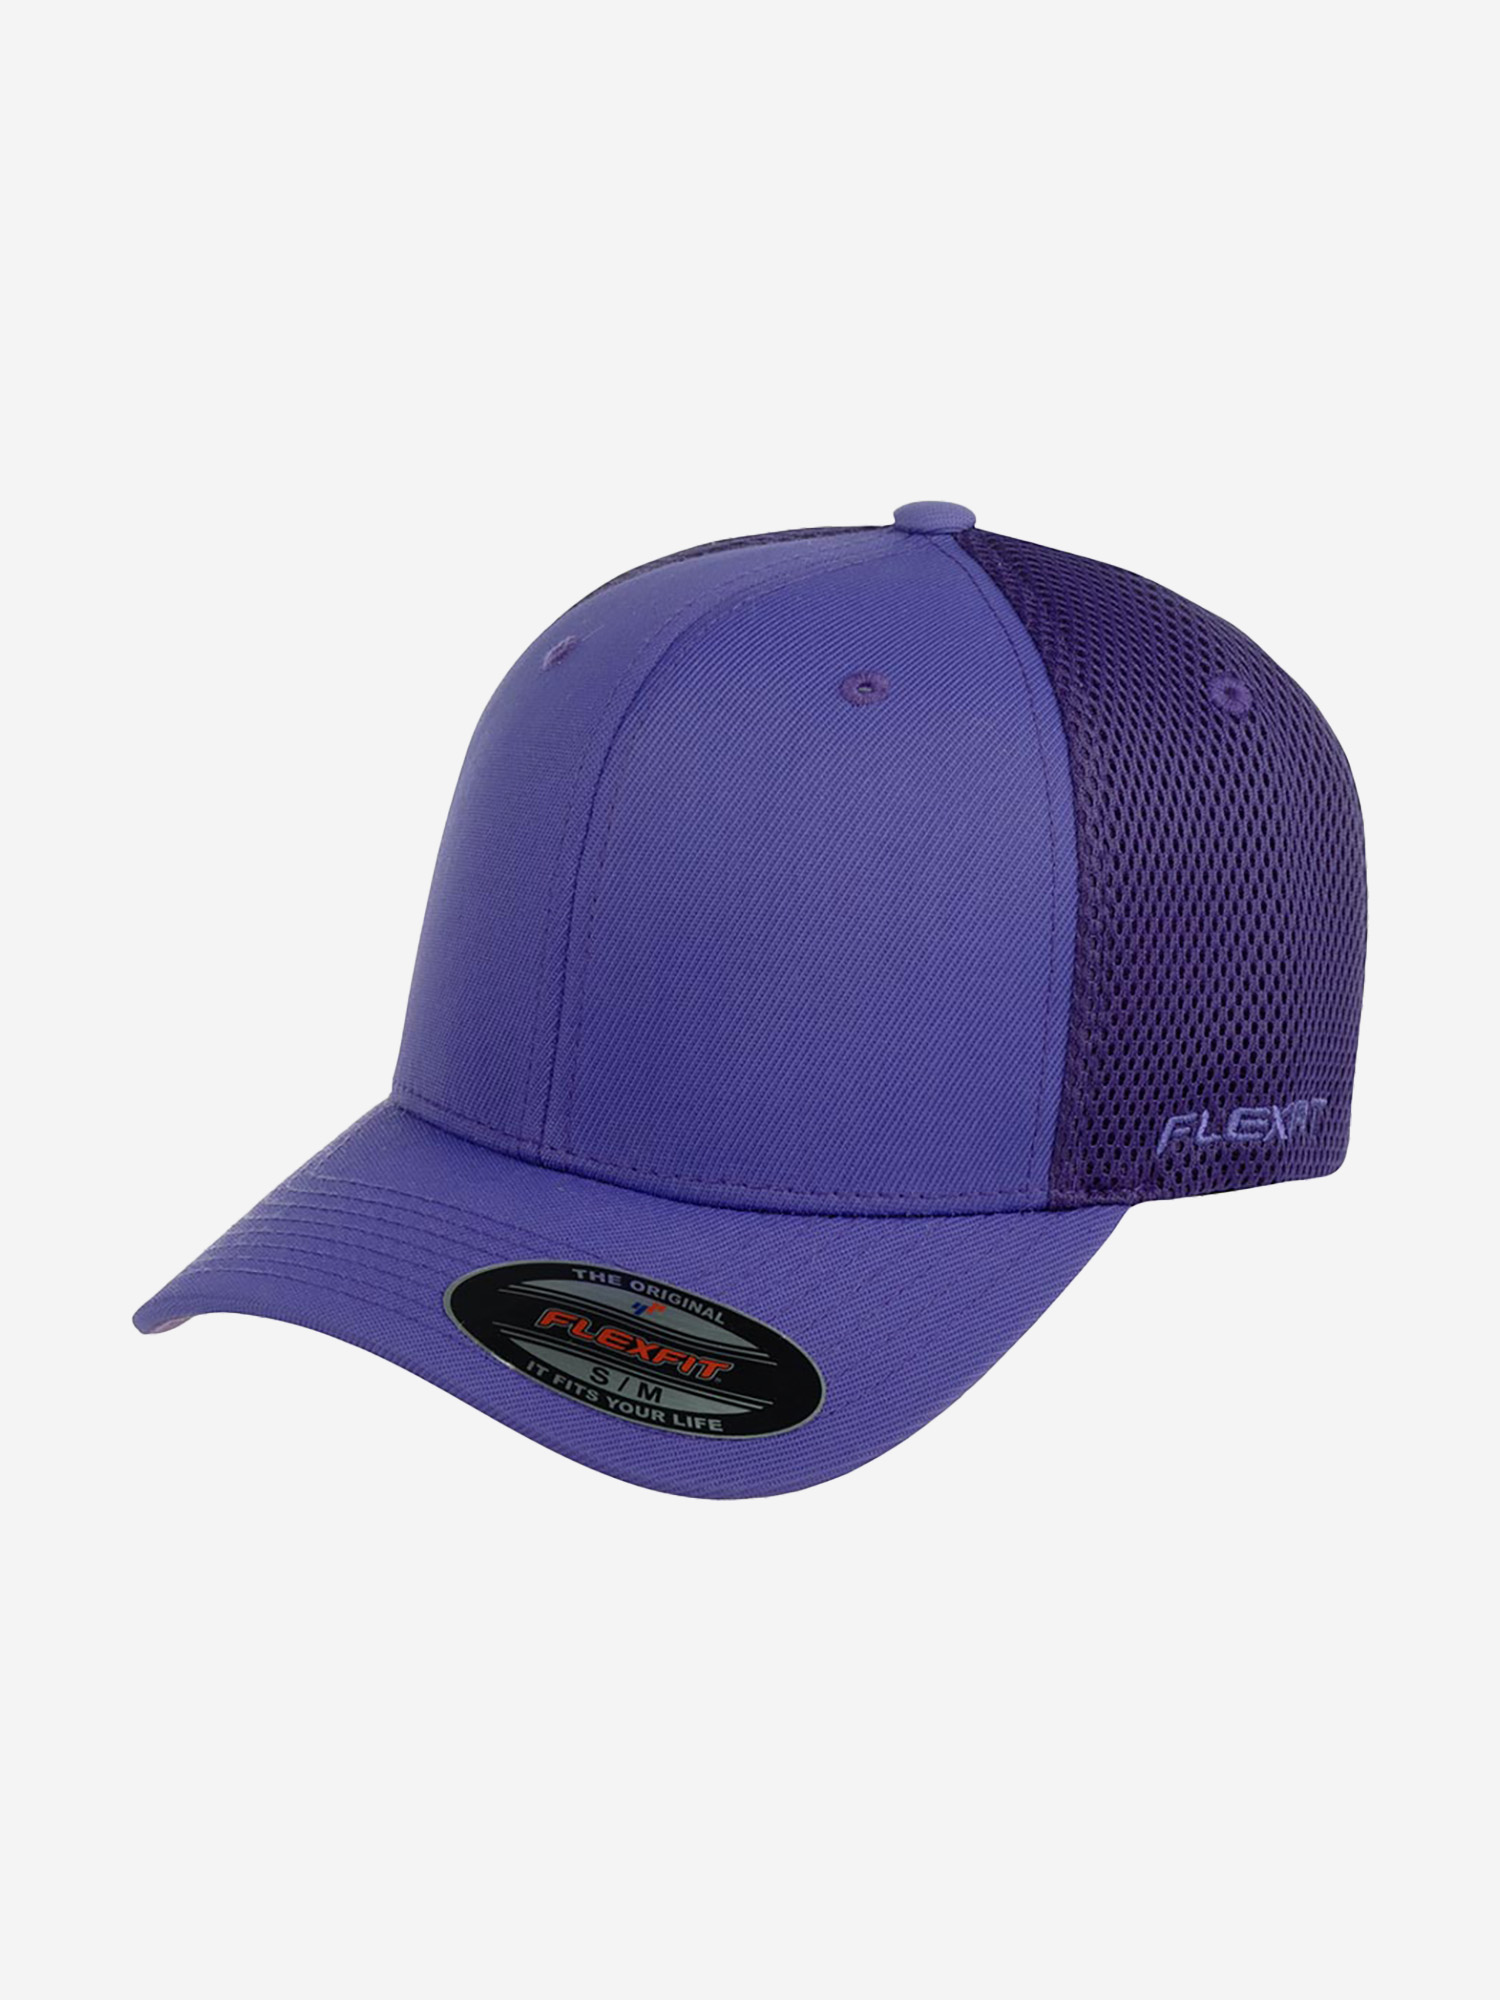 Бейсболка с сеточкой FLEXFIT 6533 (фиолетовый), Фиолетовый